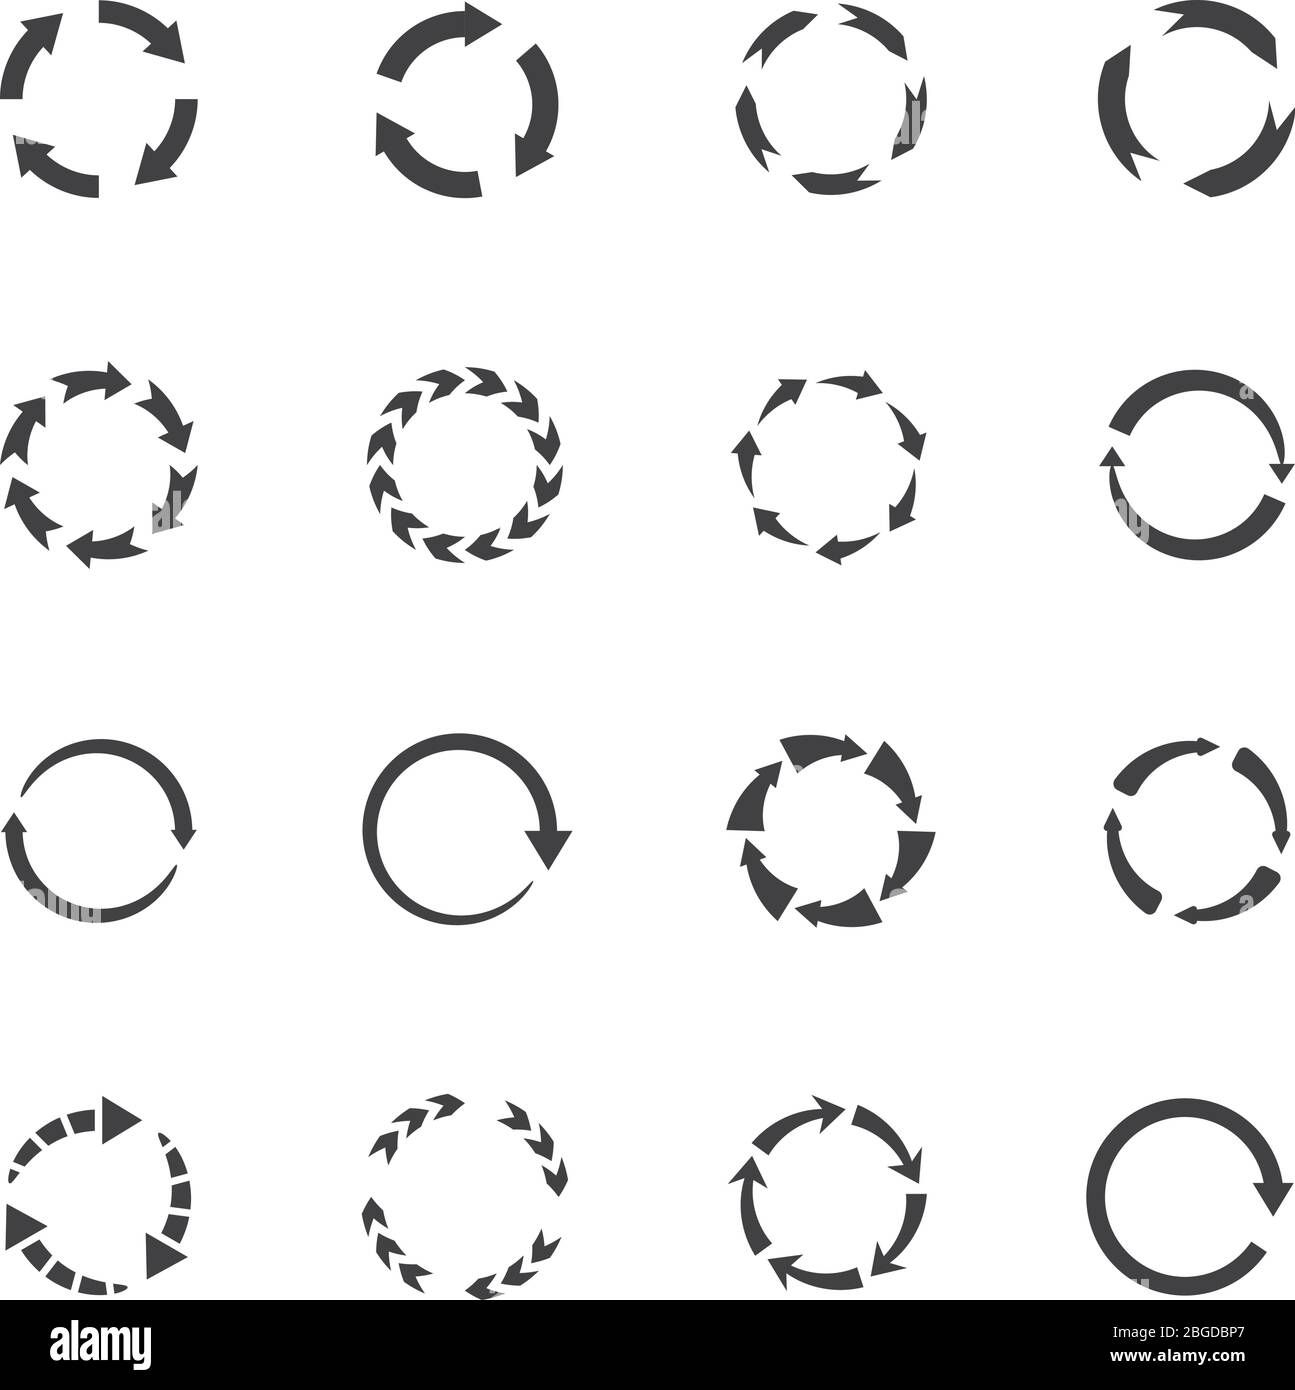 Vektorsymbole mit rundem Bewegungspfeil. Symbole für Kreispfeile. Pfeil mit runder Bewegung, Recycling einfach und Kontinuität Abbildung Stock Vektor